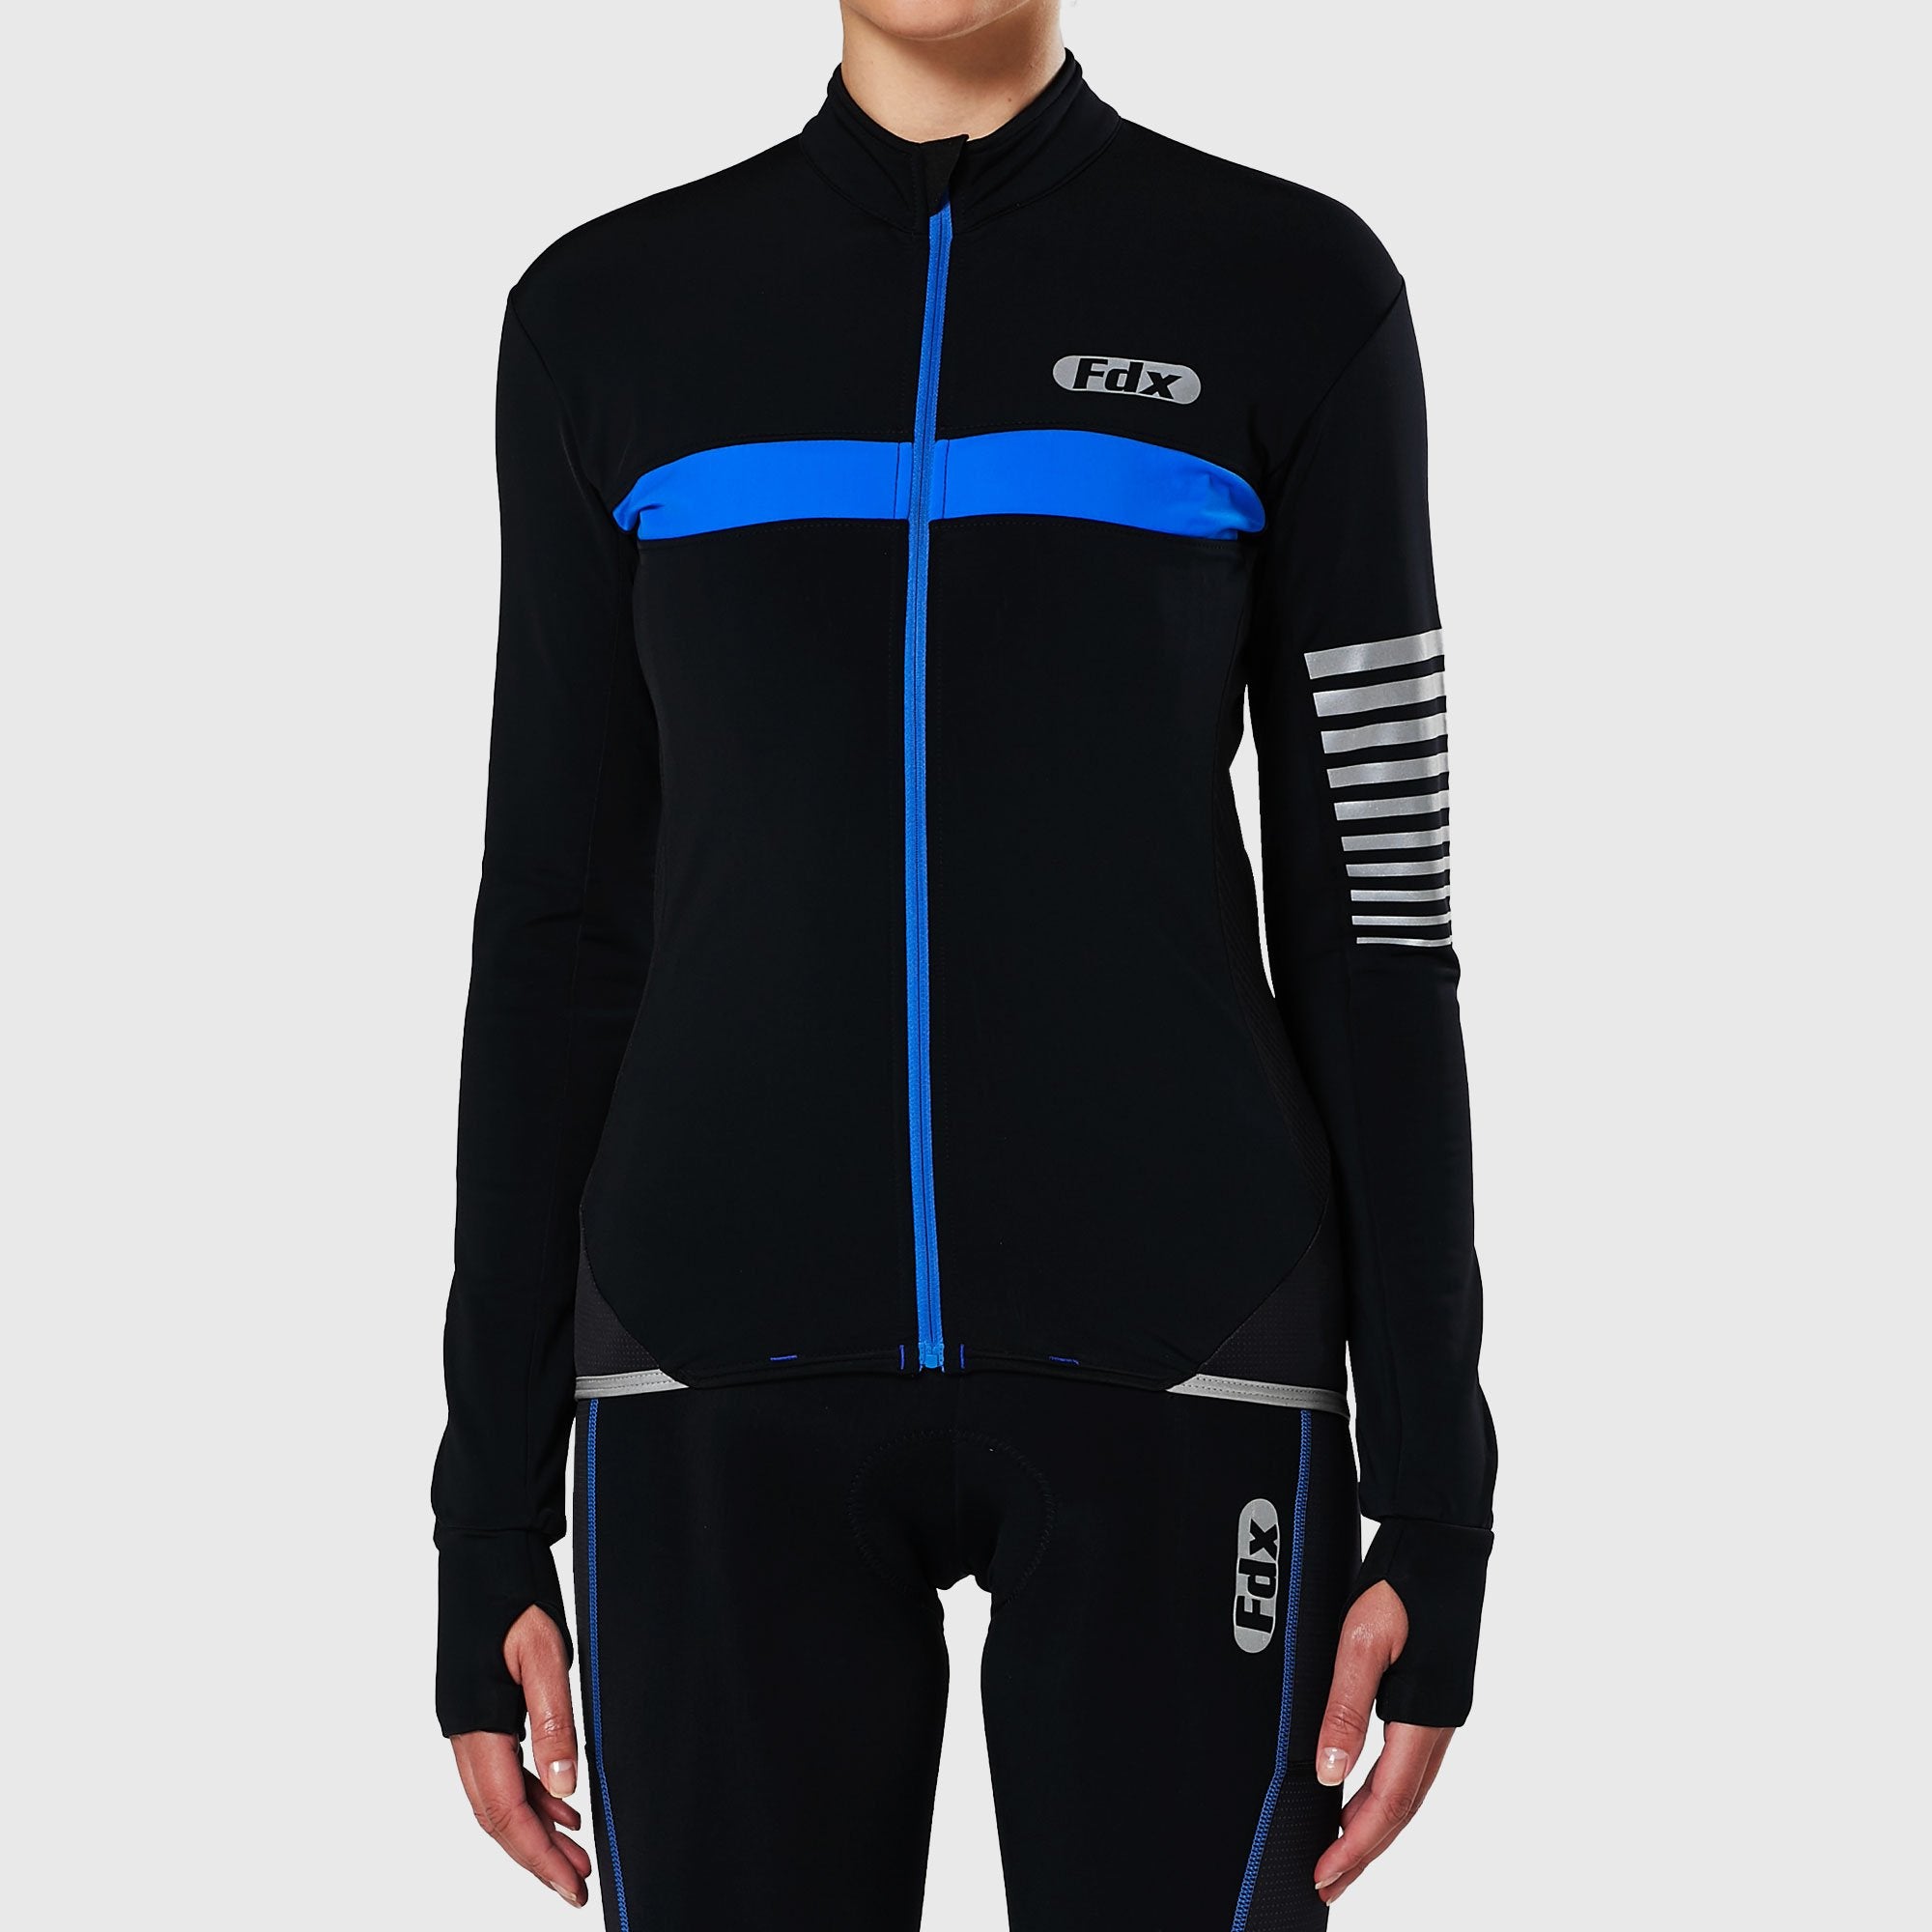 Fdx Women's Black & Blue Long Sleeve Cycling Jersey & Gel Padded Bib Tights Pants for Winter Roubaix Thermal Fleece Road Bike Wear Windproof, Hi-viz Reflectors & Pockets - All Day